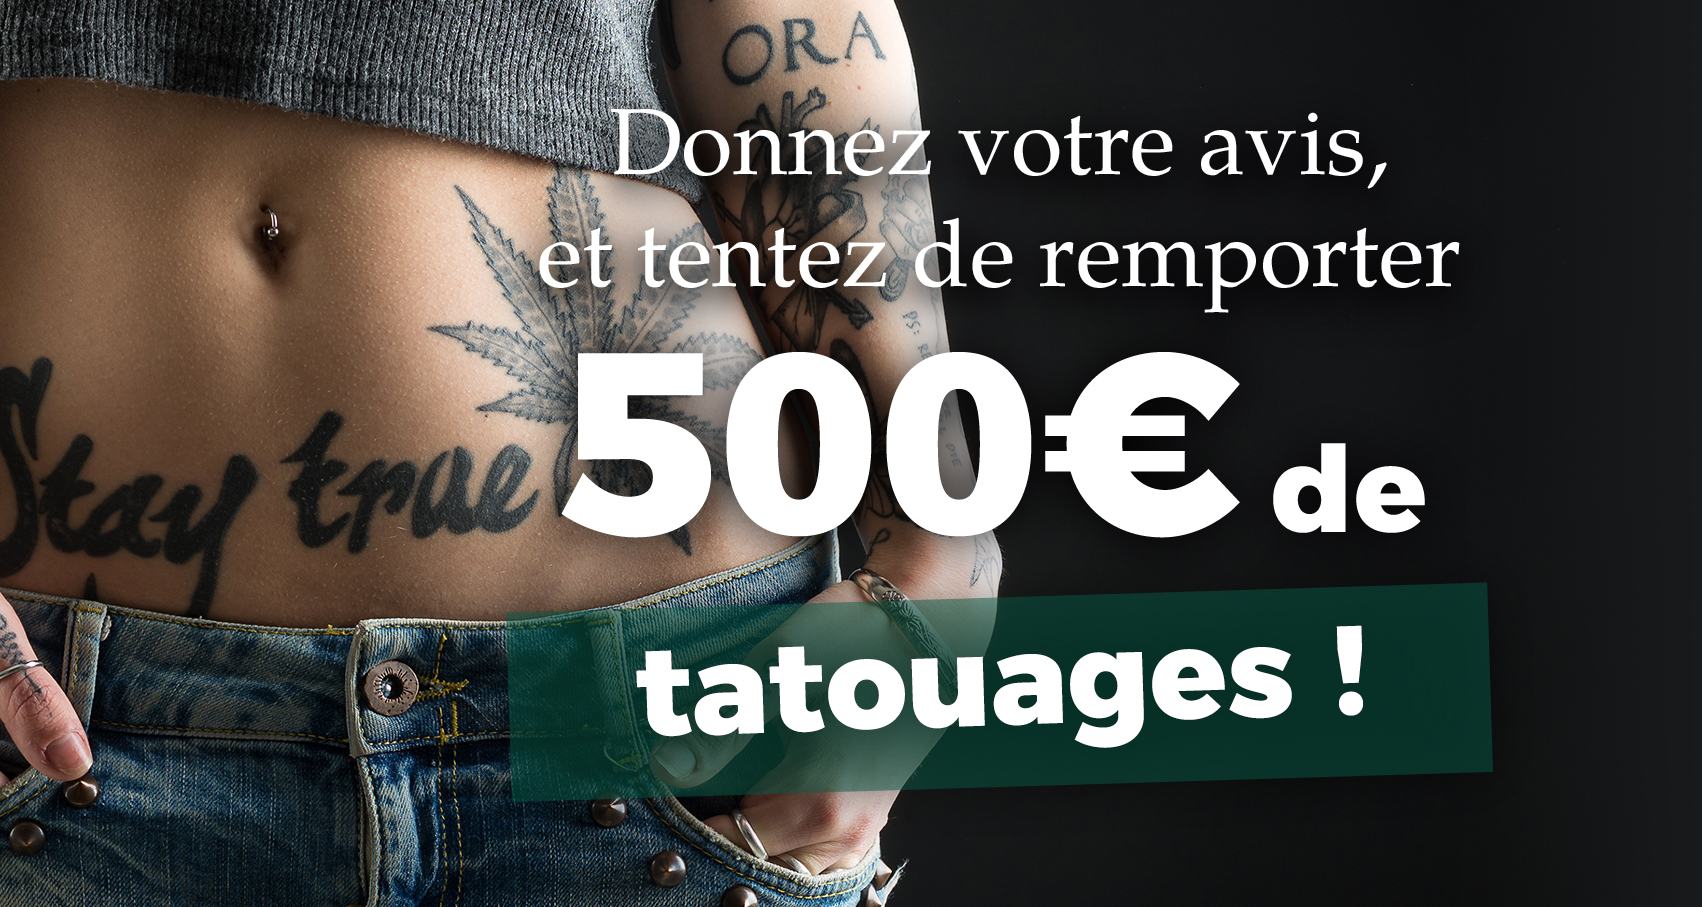 Donnez votre avis, et tentez de remporter 500€ de tatouage !